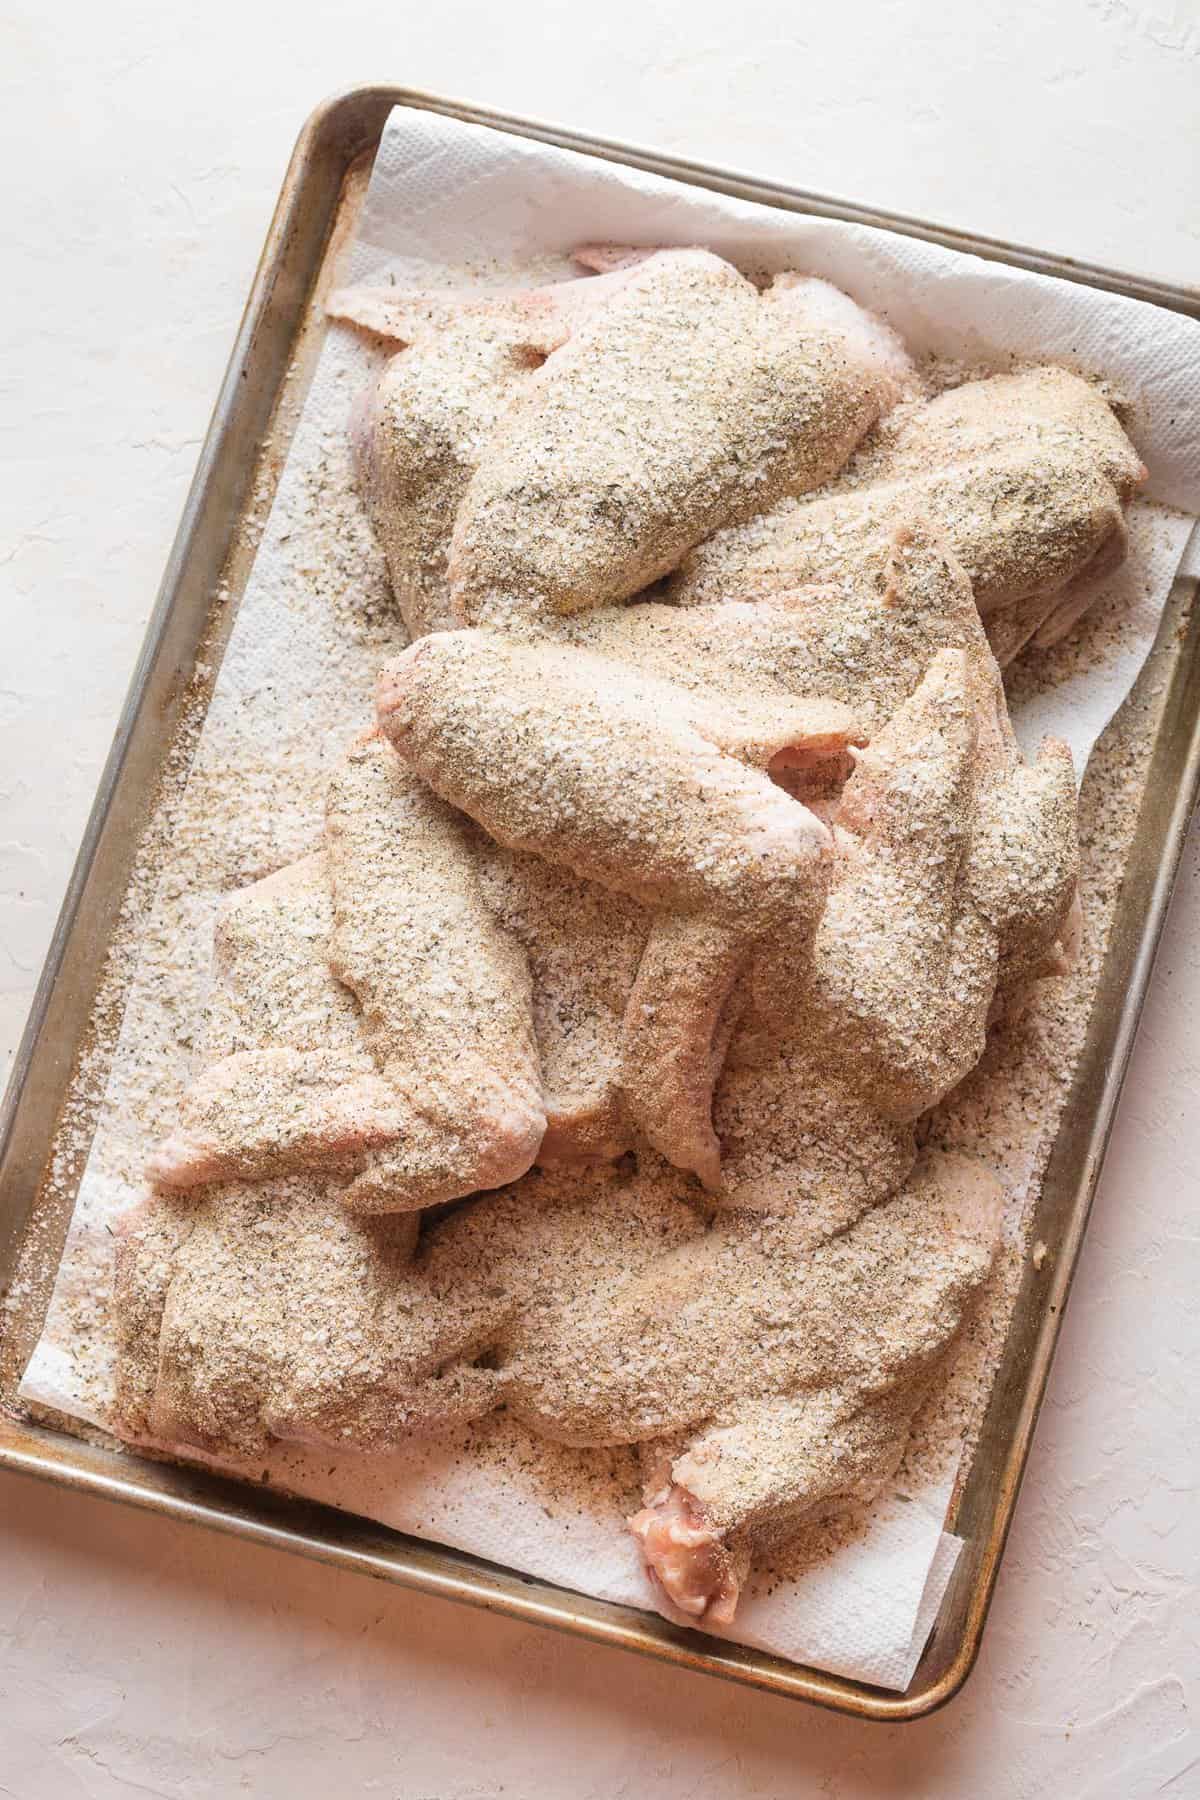 turkey wings liberally seasoned on a baking sheet